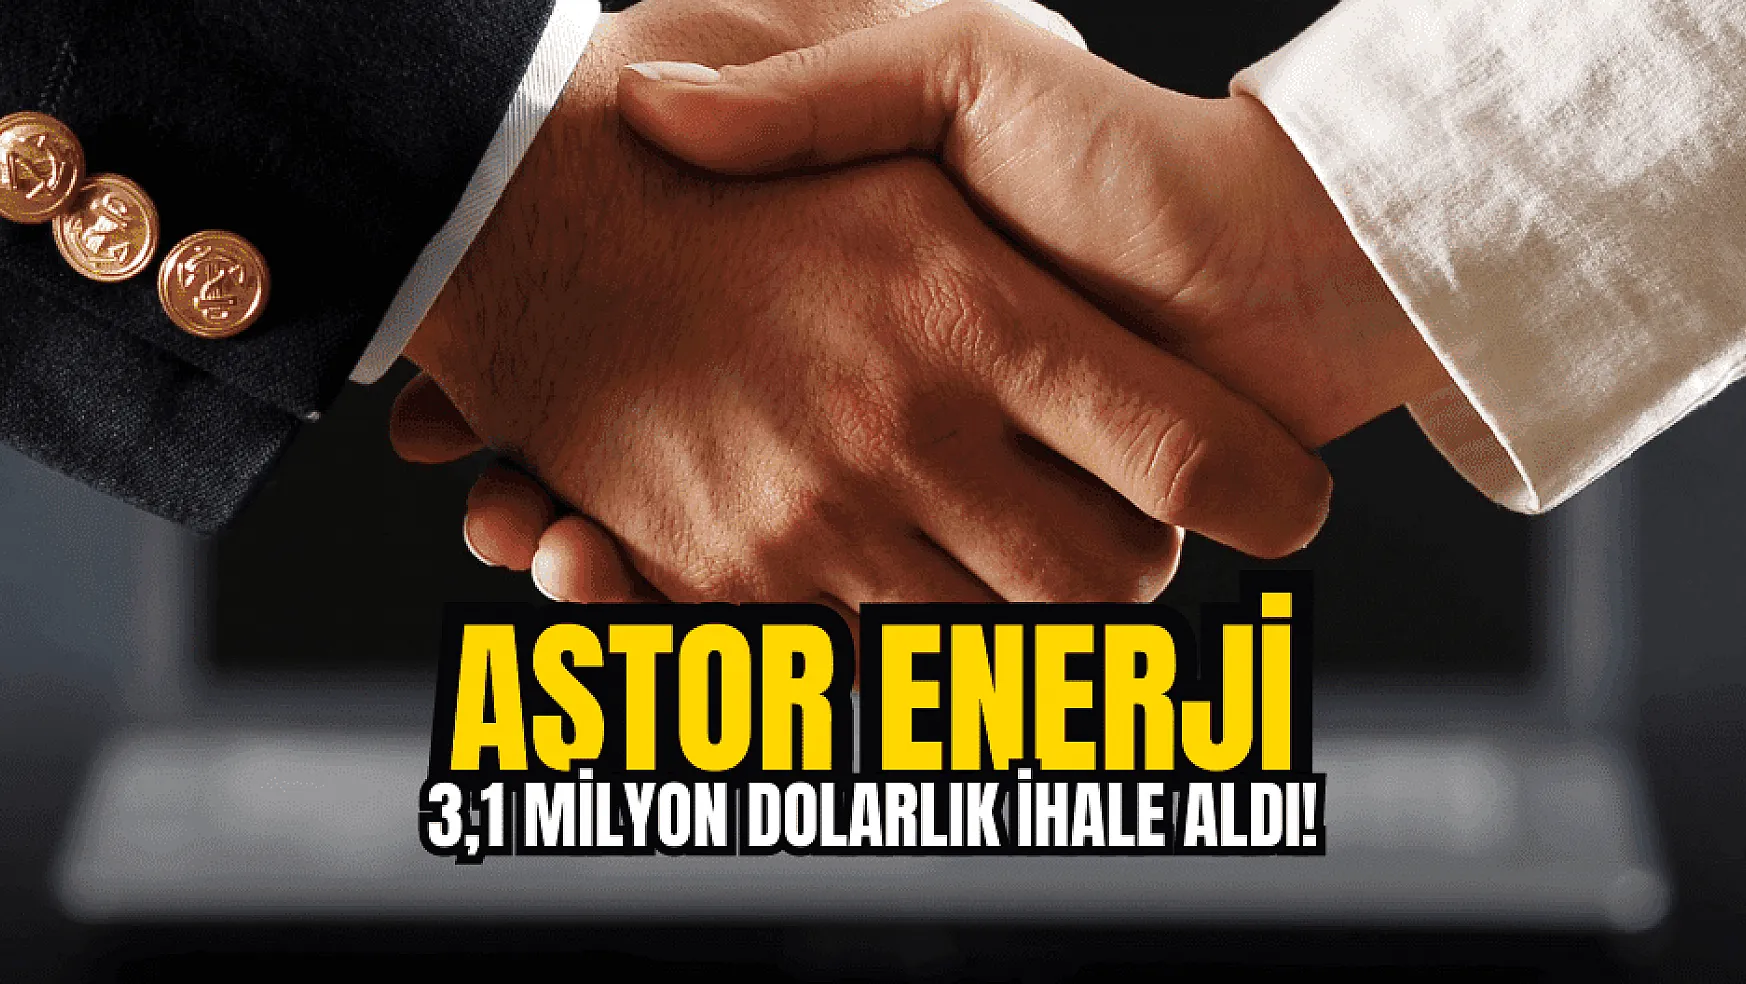 Astor Enerji, toplam 3,1 milyon dolarlık ihaleleri açıkladı!